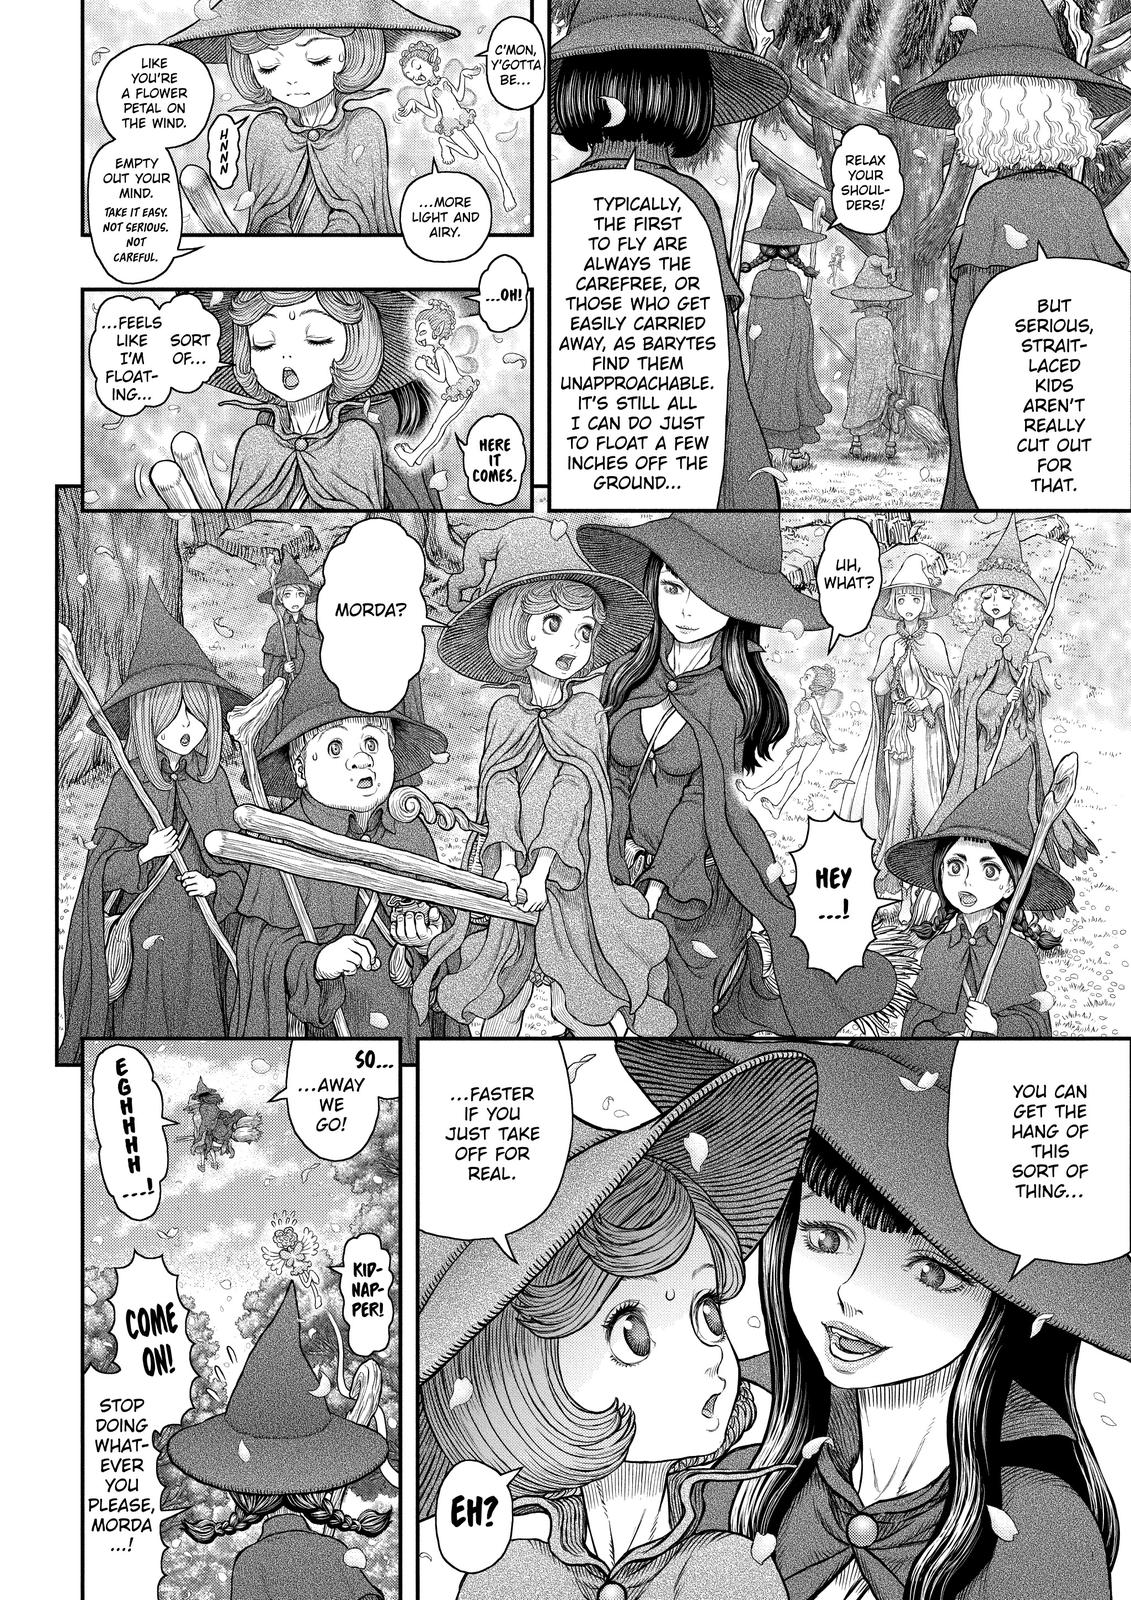 Berserk Manga Chapter 361 image 06